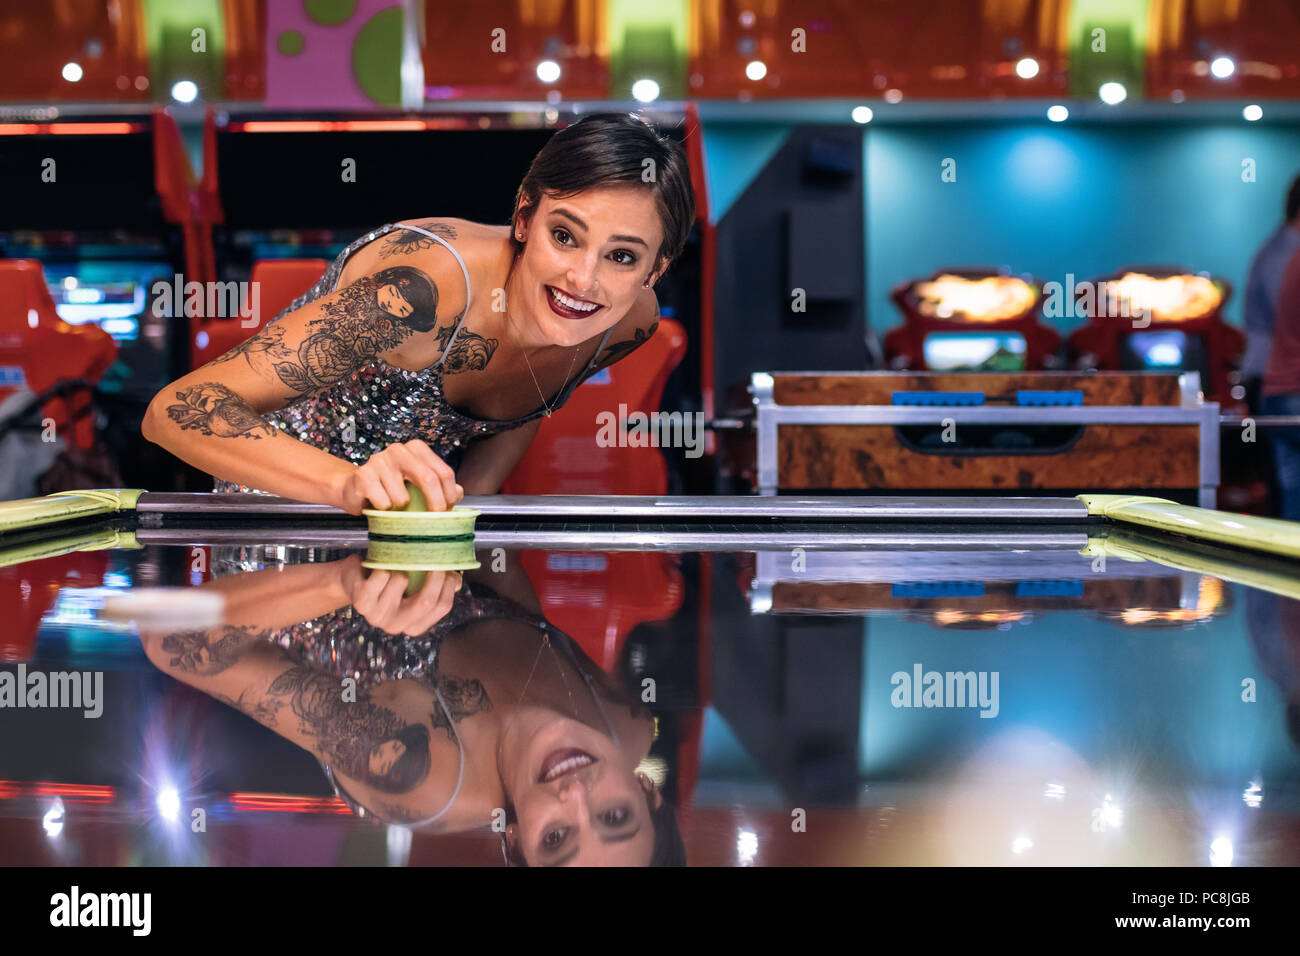 Lächelnde Frau mit einem Gaming arcade spielen Münze air hockey Spiel betrieben. Frau mit Spaß, das air hockey Spiel bei einem Gaming Salon. Stockfoto